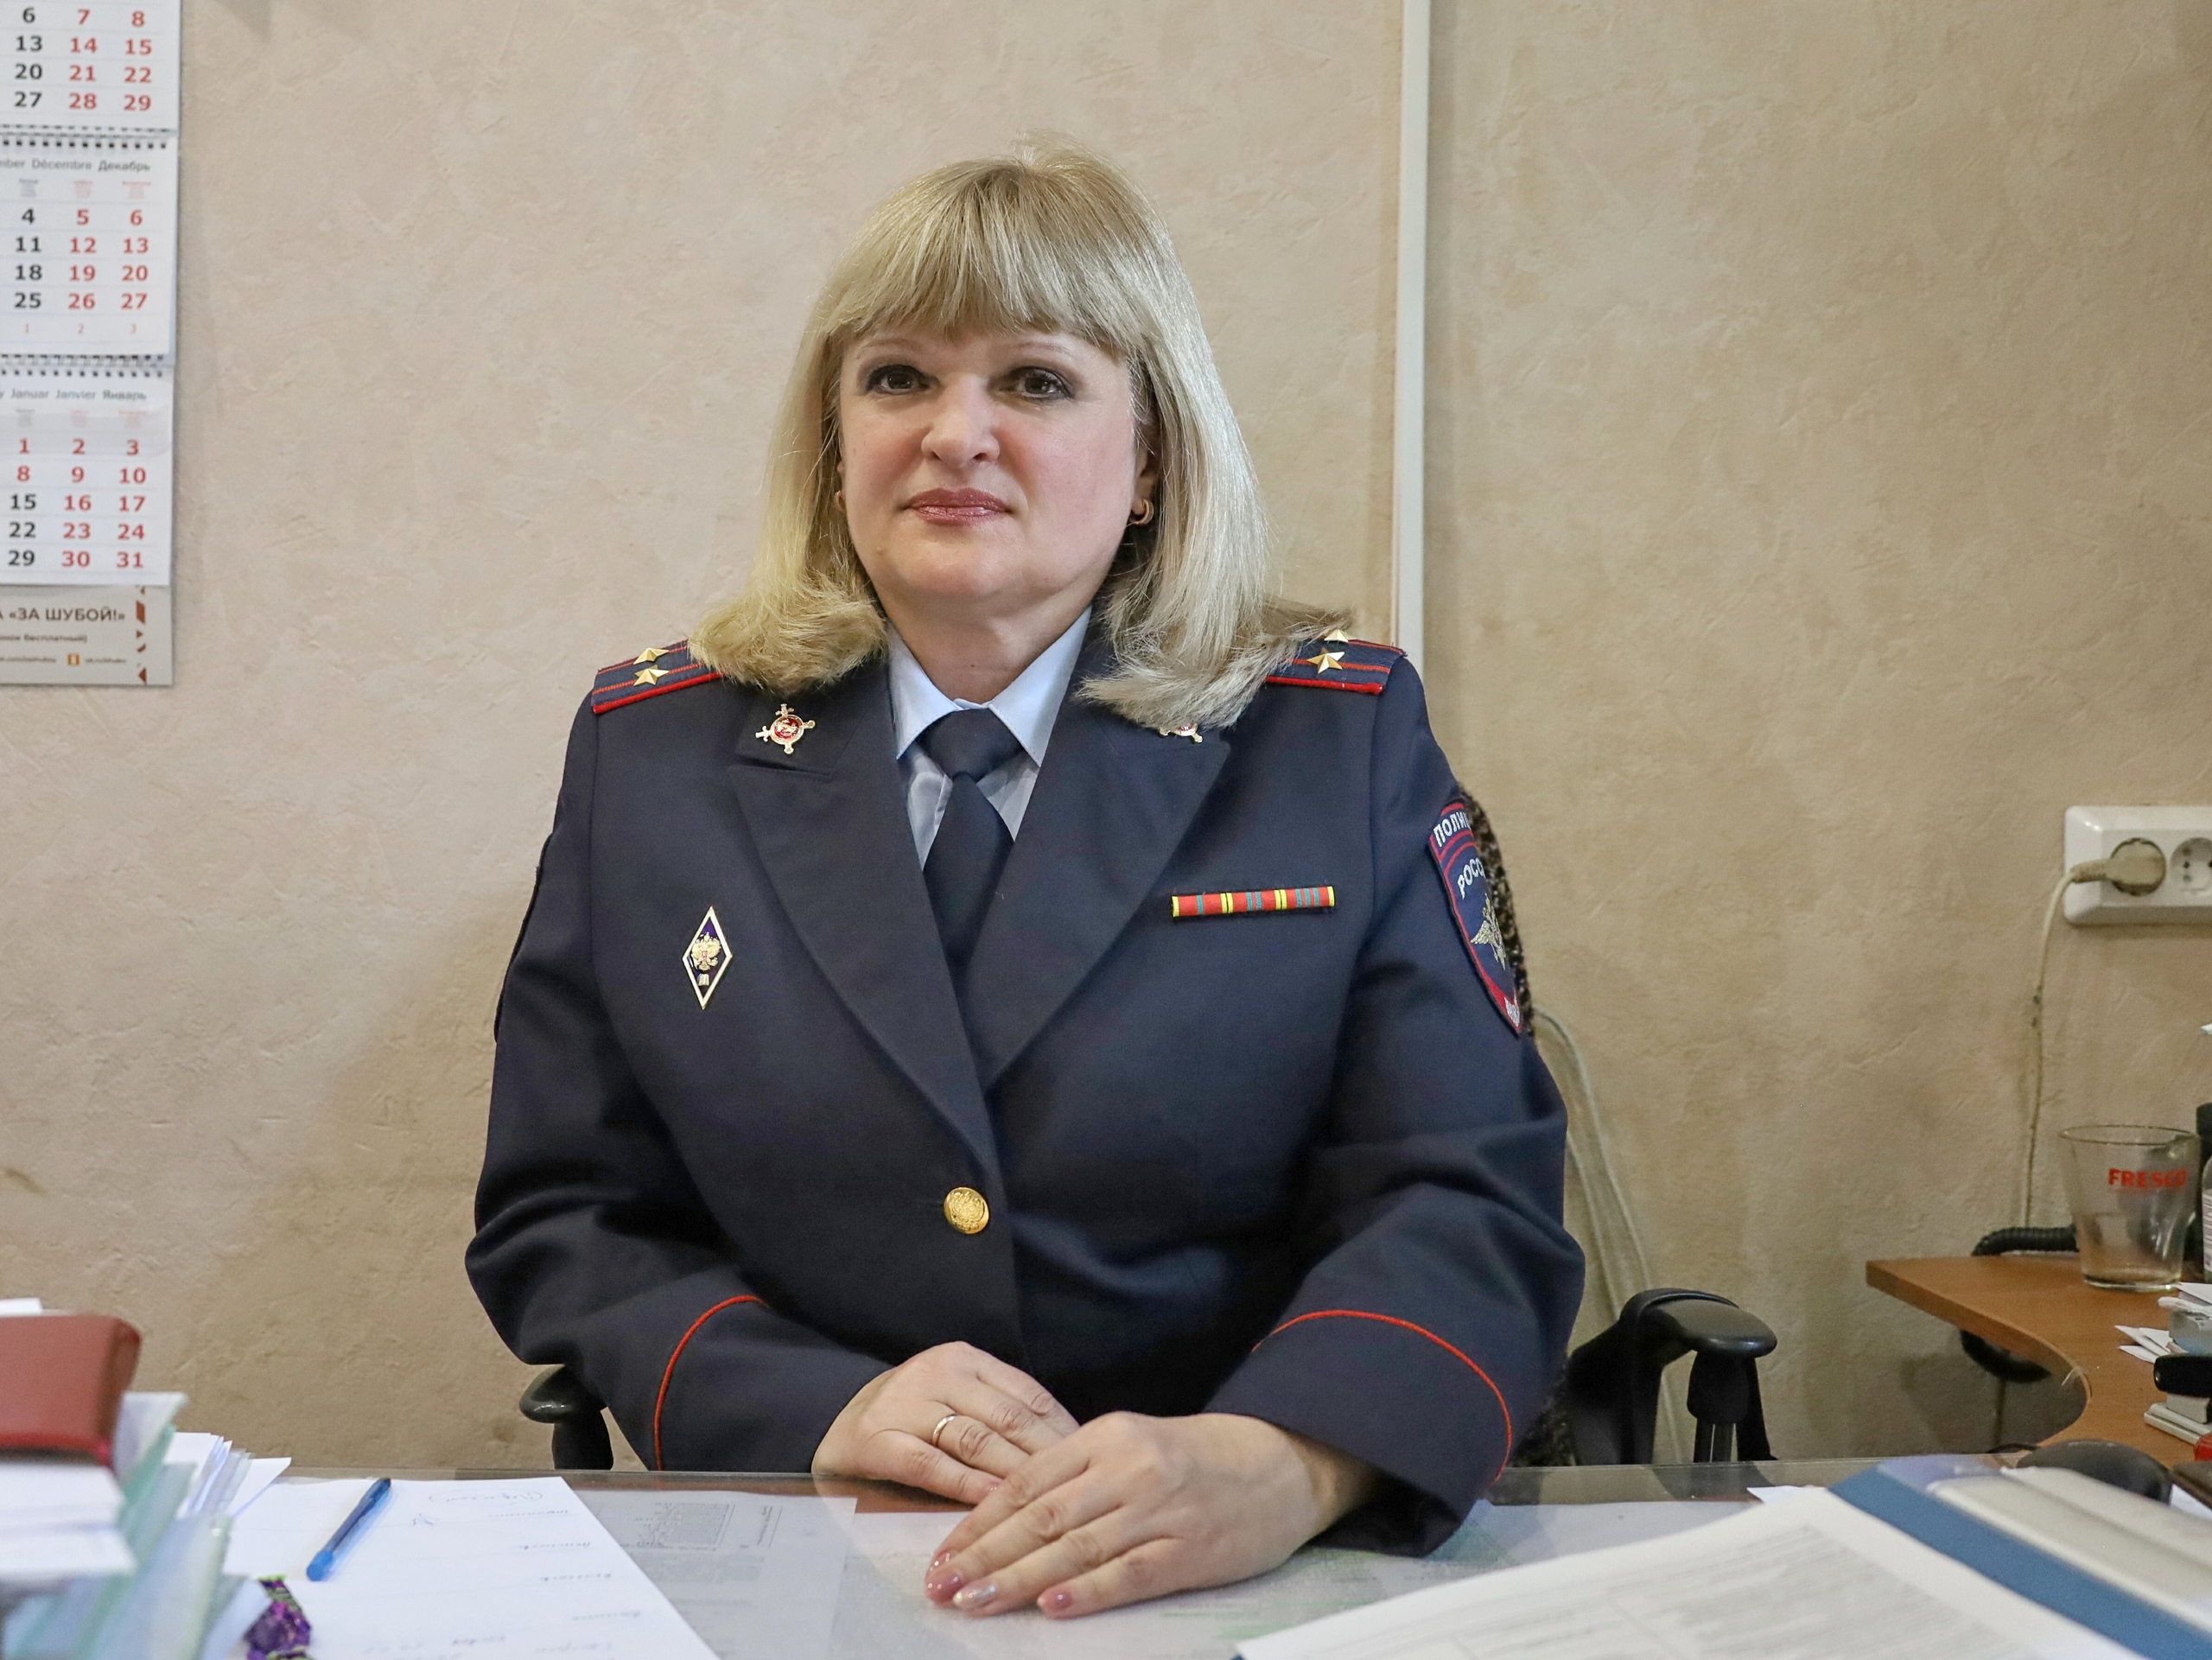 Начальник отдела дознания Наталья Струльникова: О погонах мечтала с детства